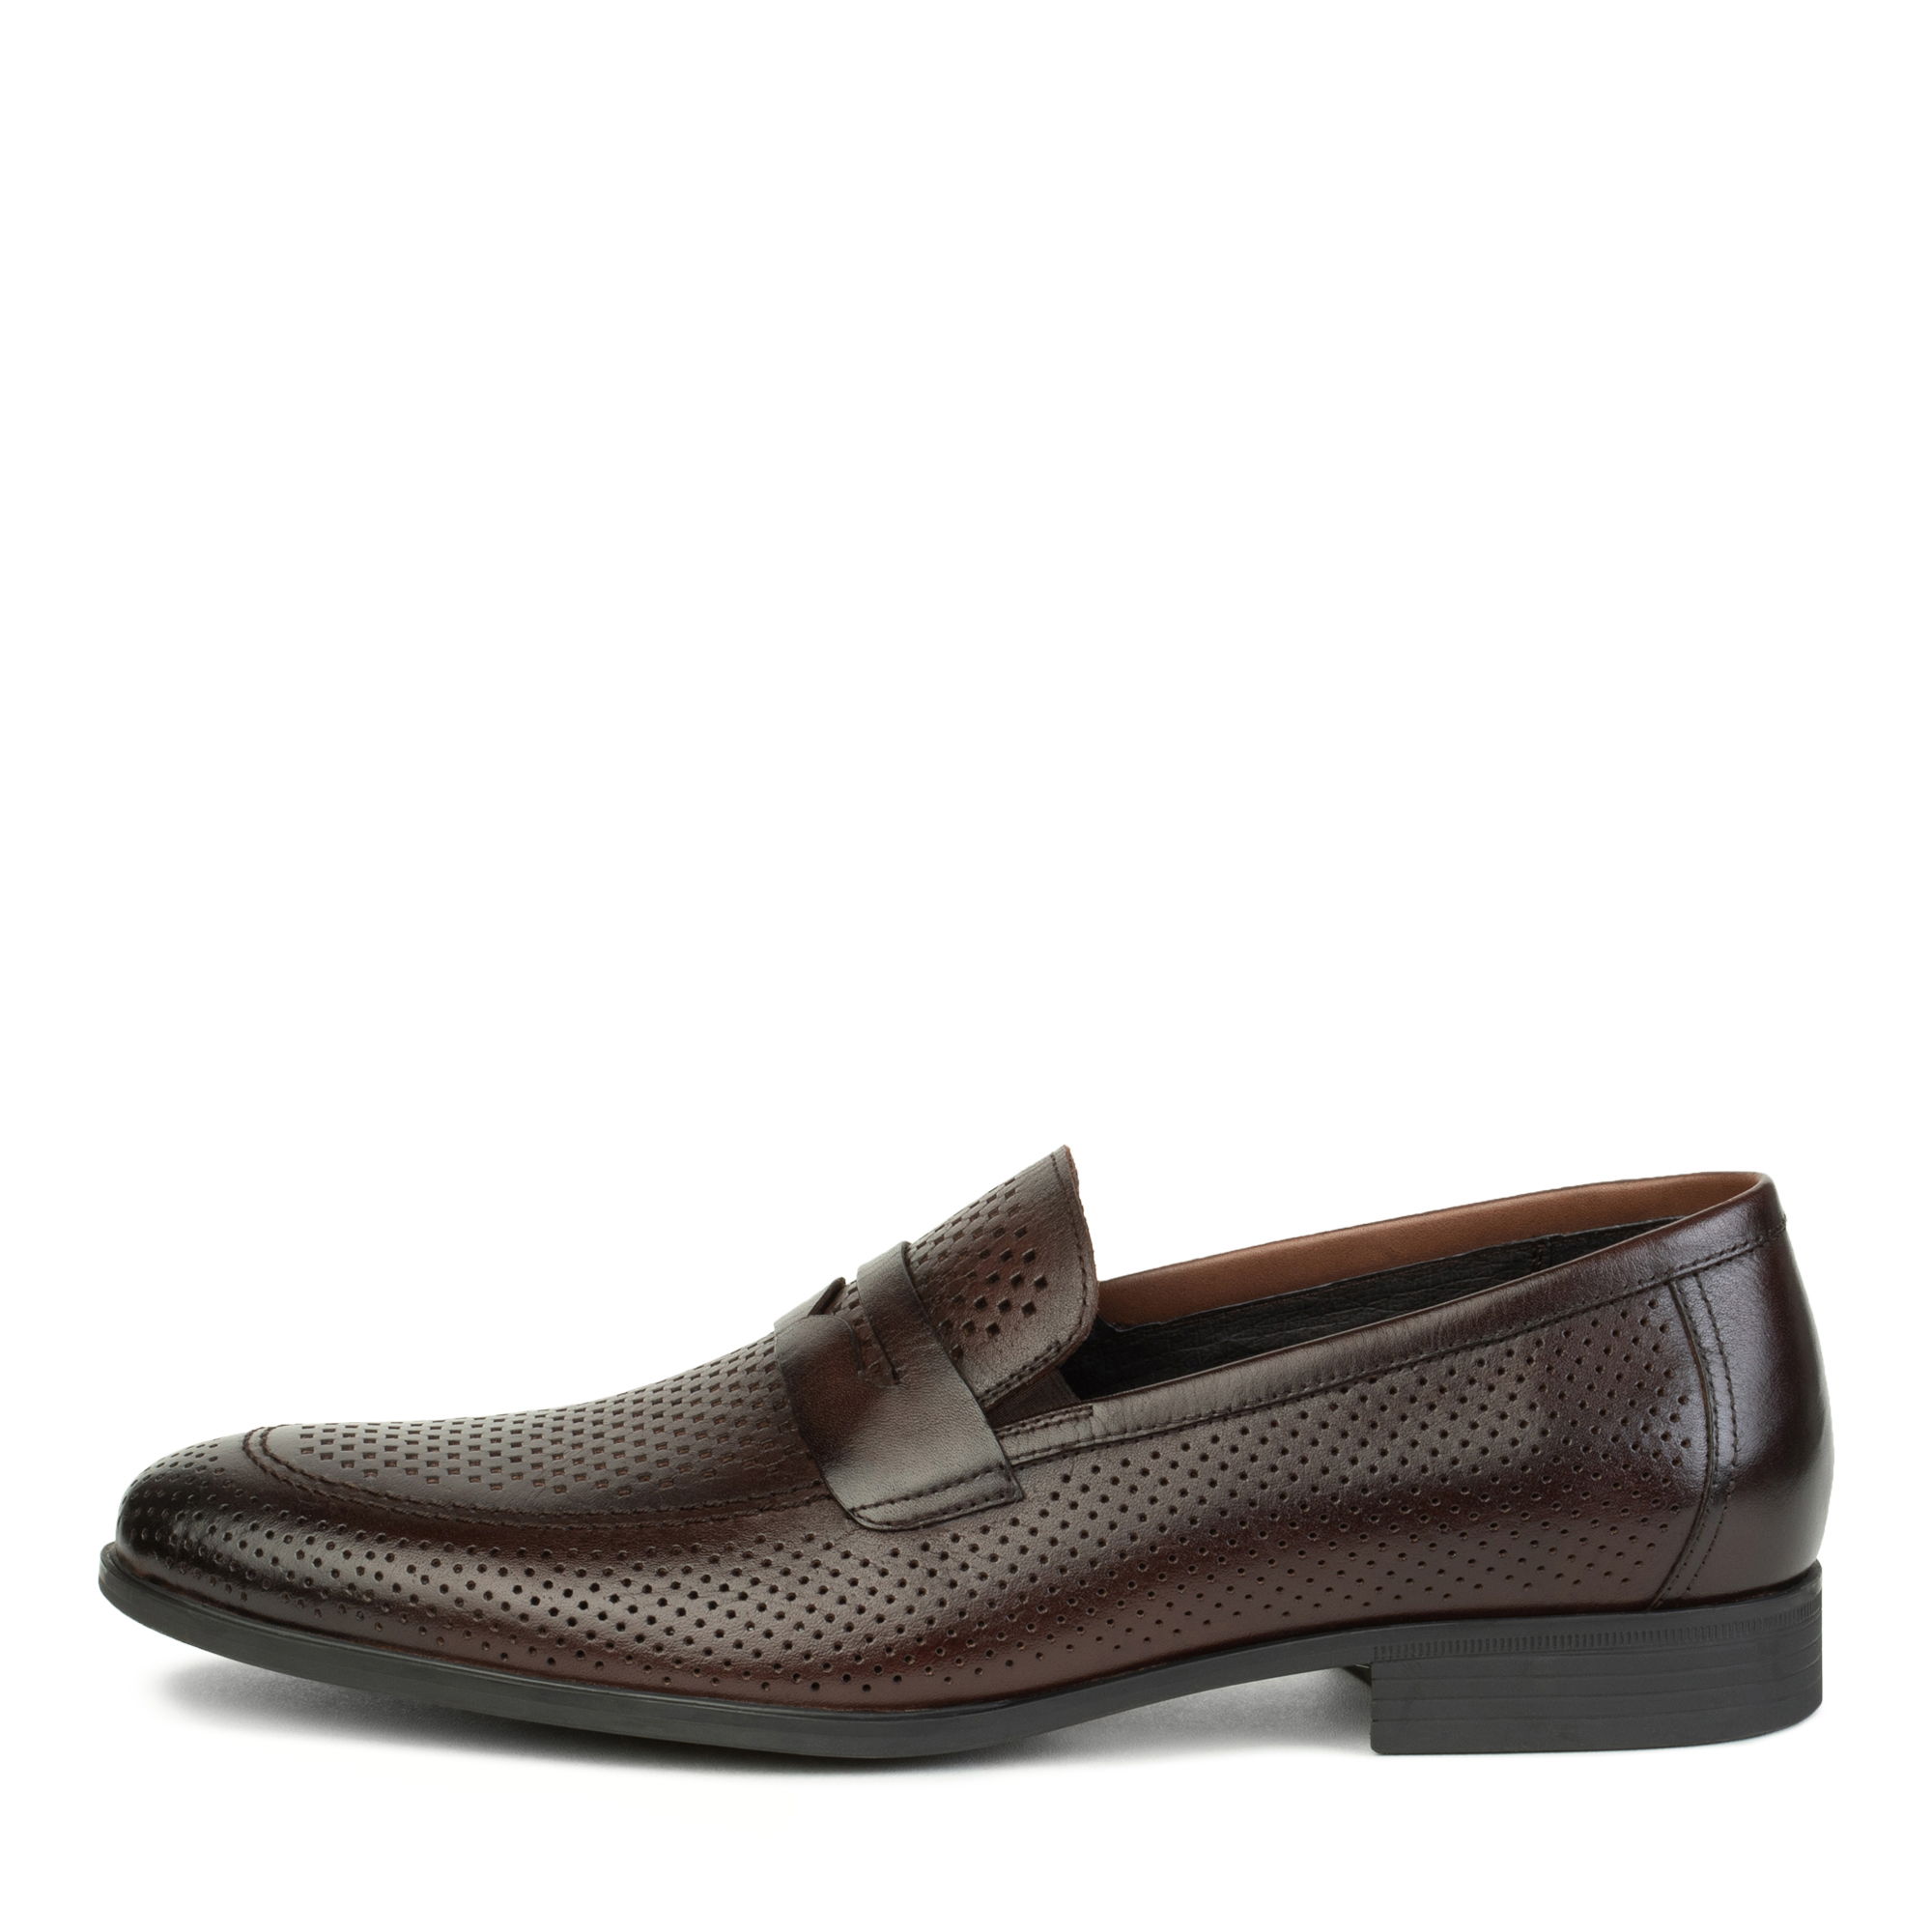 Туфли/полуботинки Thomas Munz 058-389A-1609, цвет темно-коричневый, размер 44 - фото 1